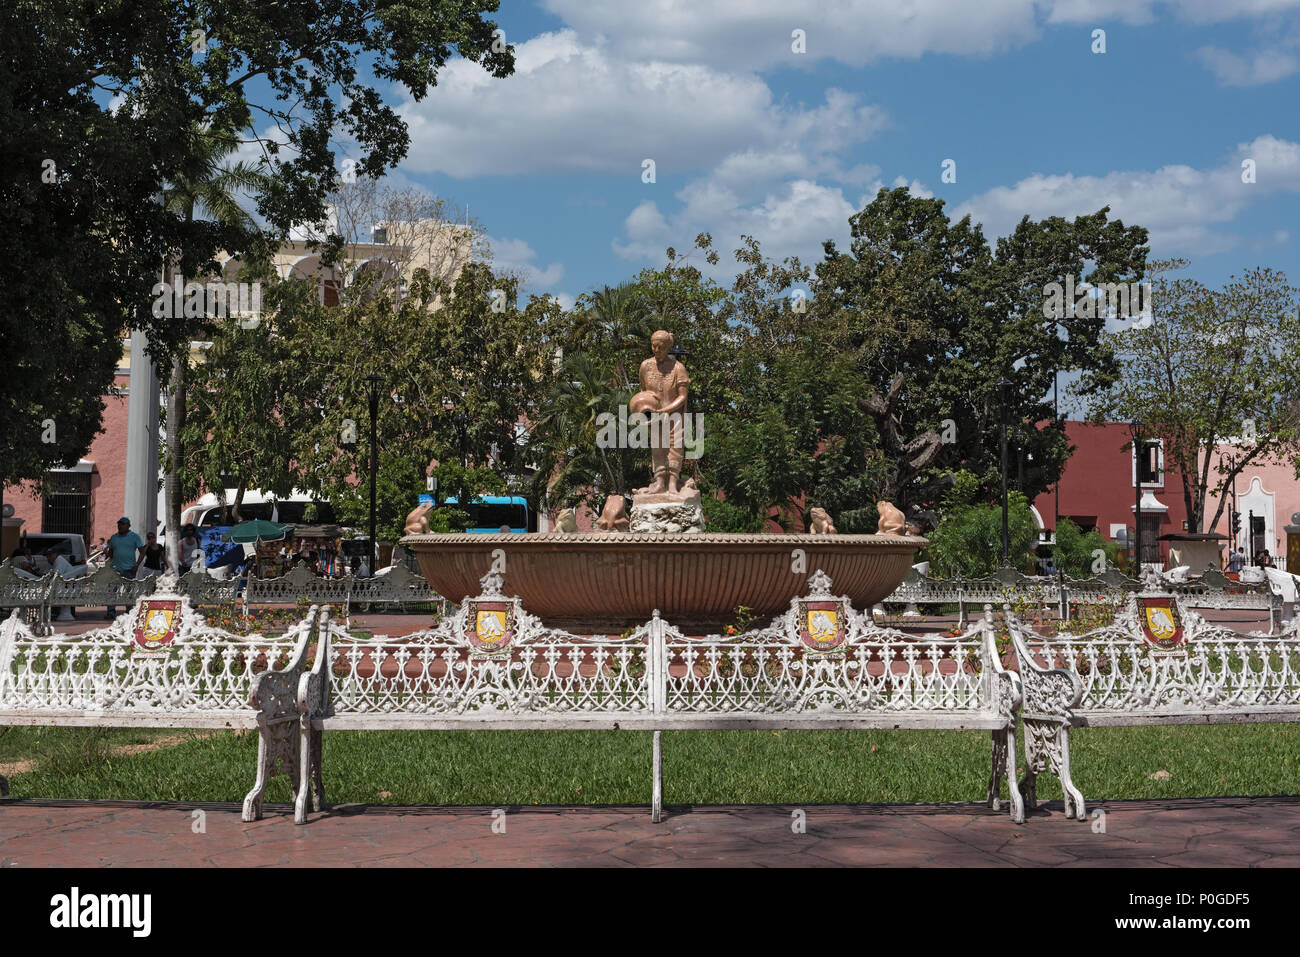 Fontaine avec le monument de la mestiza vallisoletana dans le parc francisco canton rosado, Valladolid, Mexique Banque D'Images